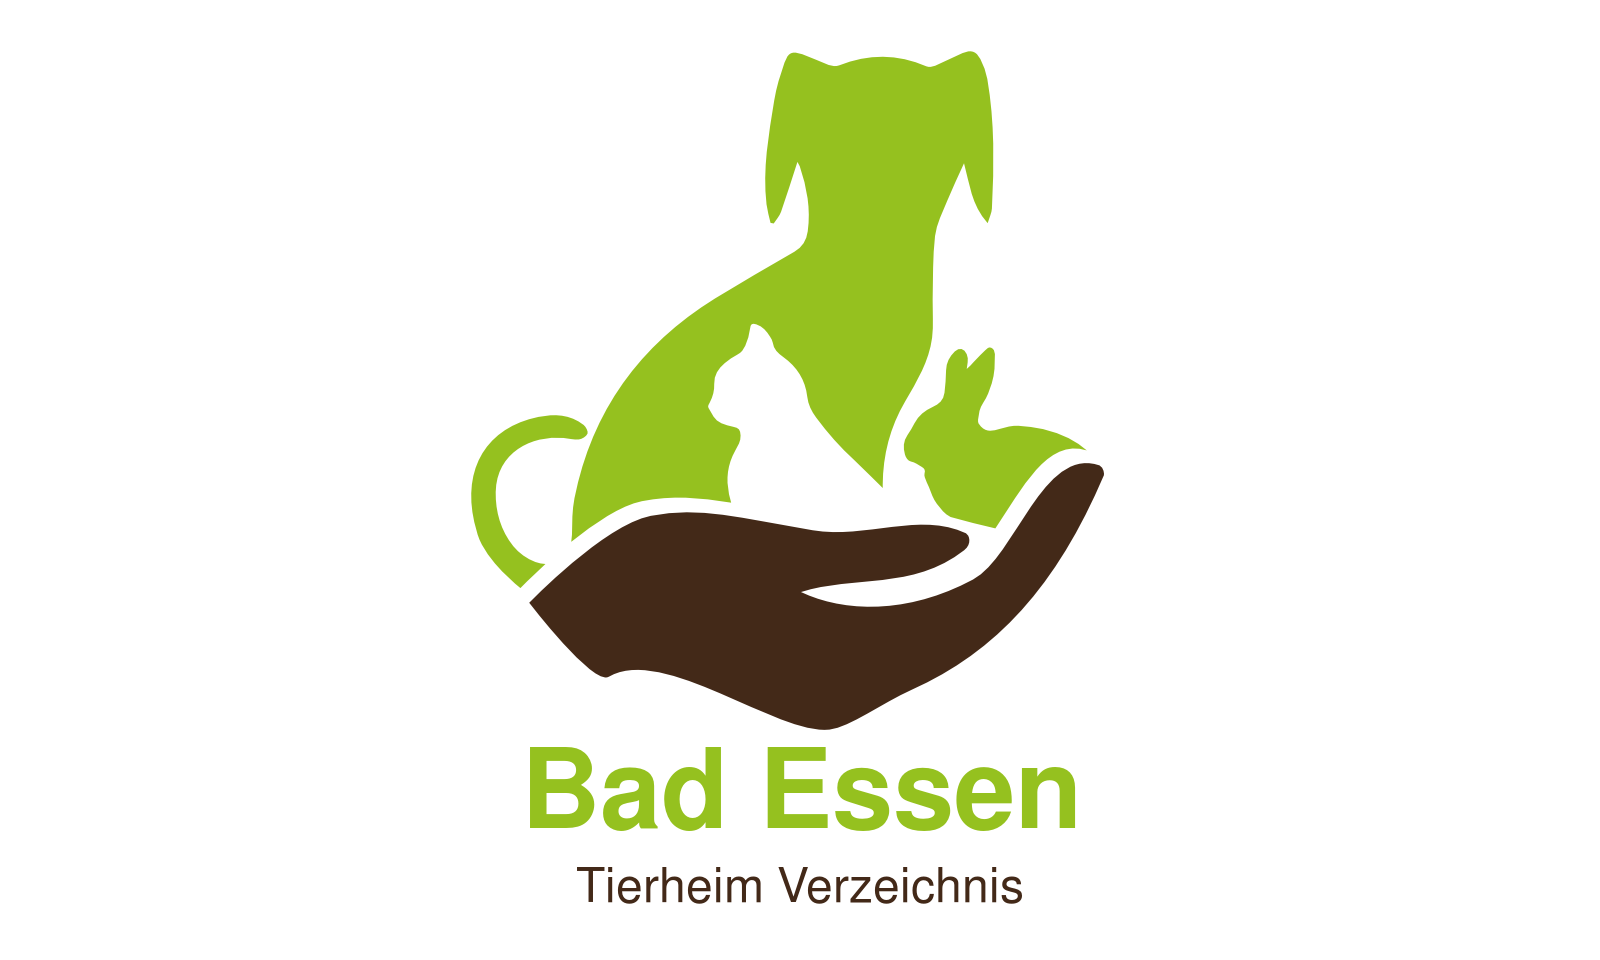 Tierheim Bad Essen